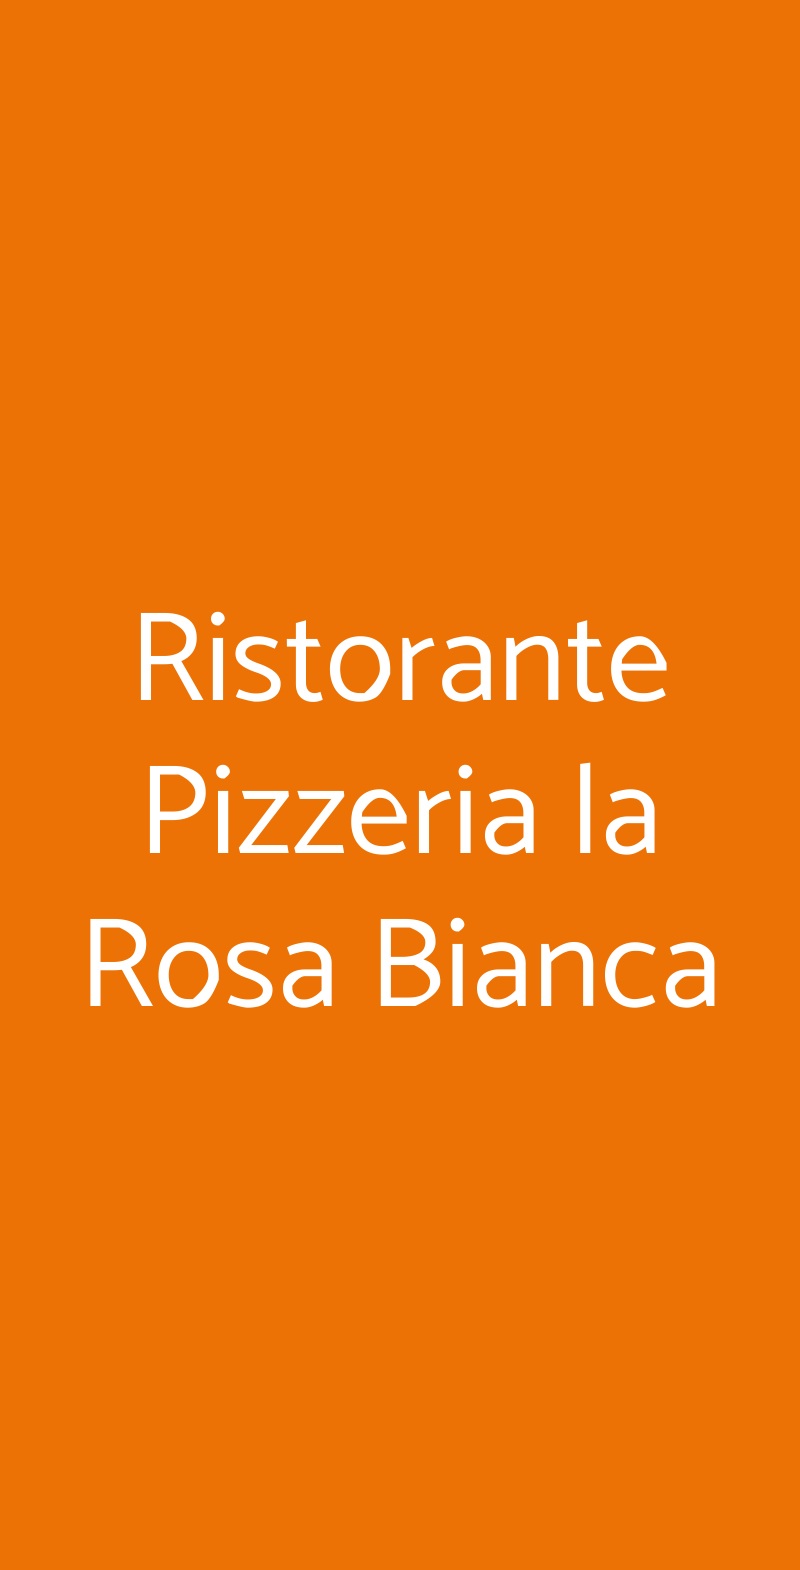 Ristorante Pizzeria la Rosa Bianca Milano menù 1 pagina